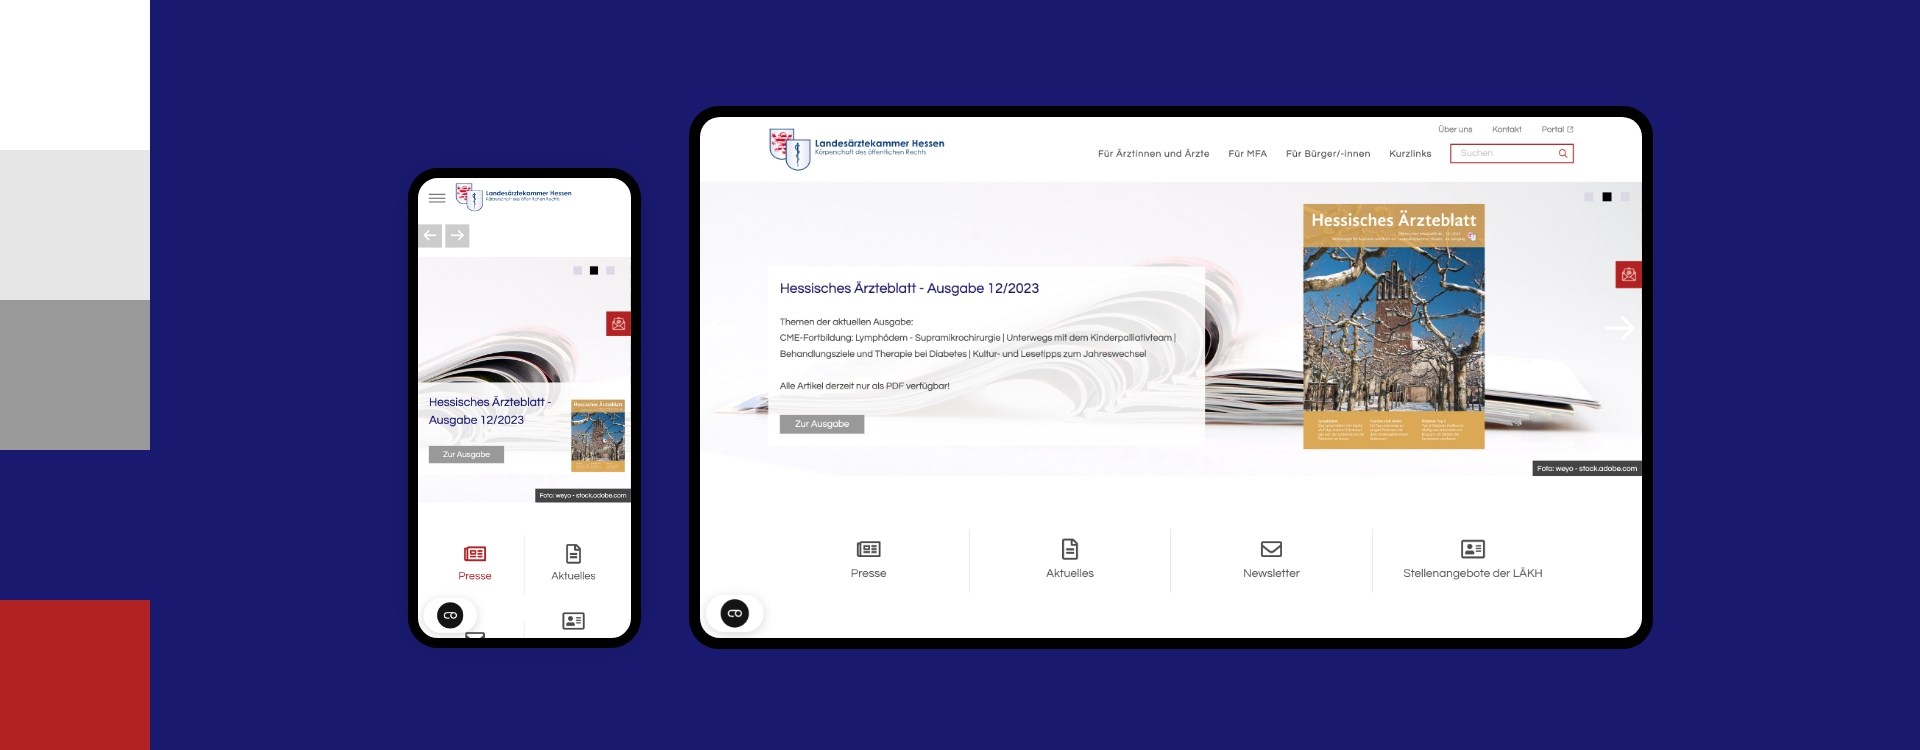 Screenshot einer Desktop- und Smartphoneansicht der Webseite der Landesärztekammer Hessen umgeben von den Farben des Corporate Design